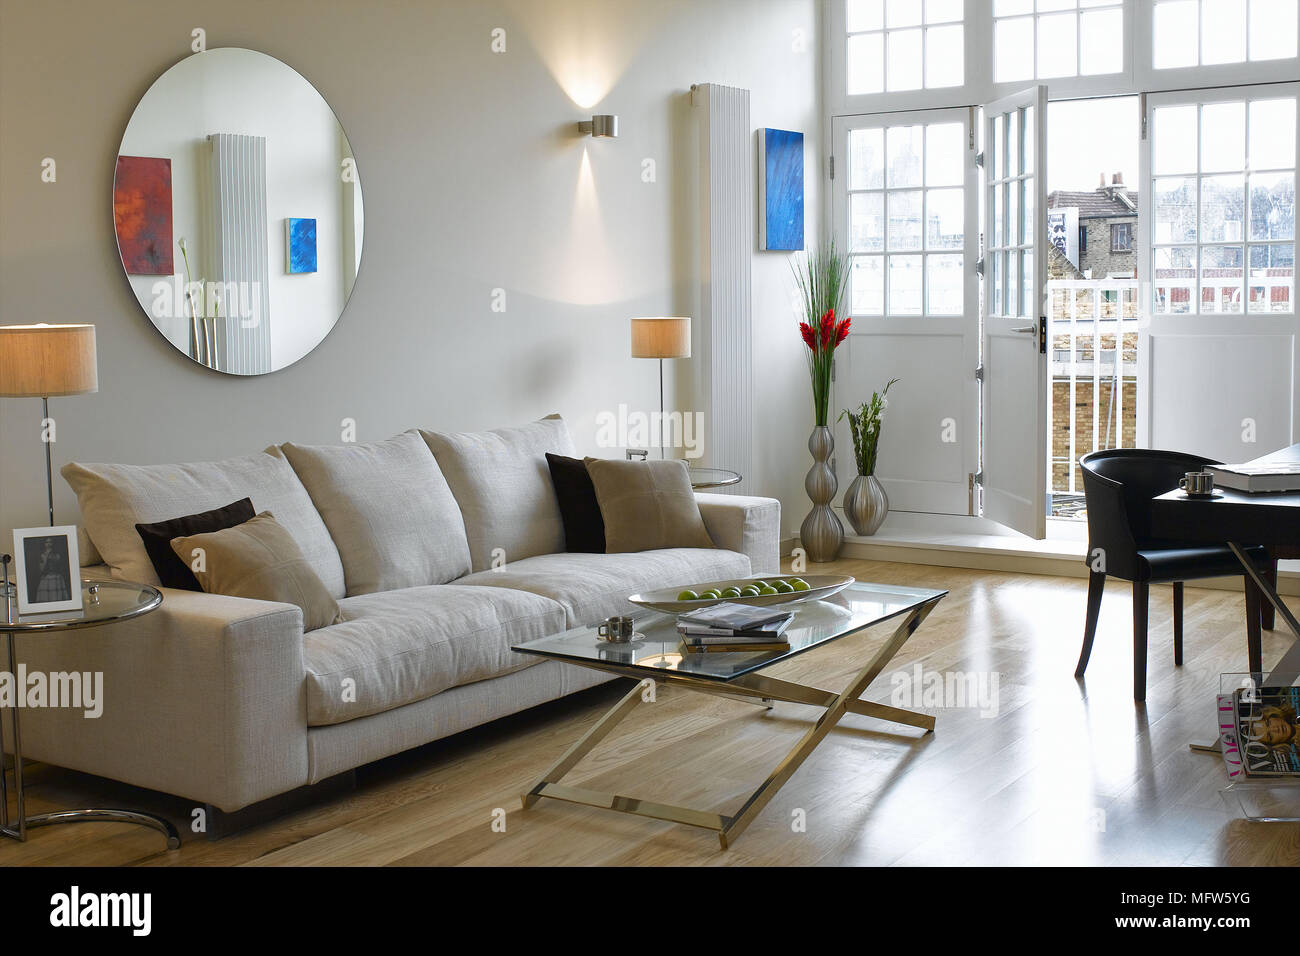 Runder Spiegel über ein Sofa in ein Wohnzimmer mit einer offenen Terrasse. Stockfoto